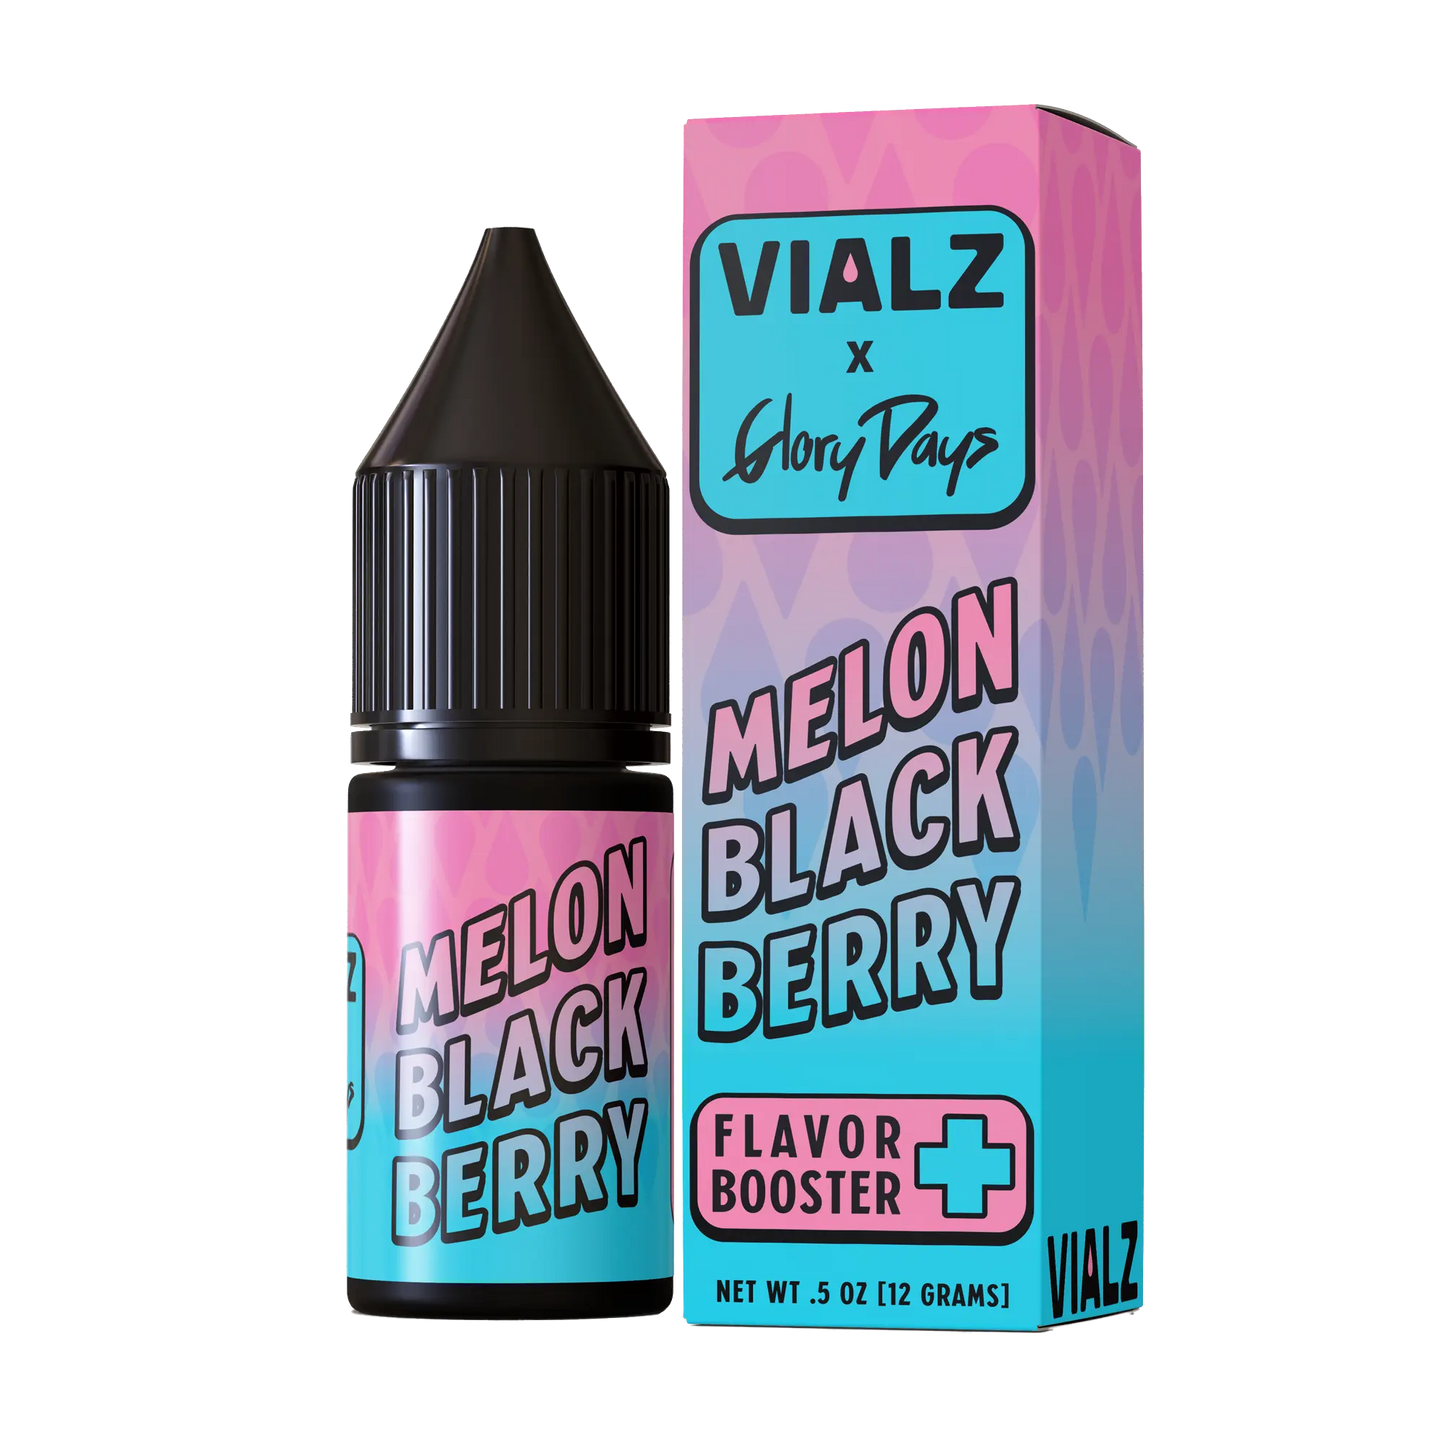 Vialz Melon Black Berry (Flavor Booster)